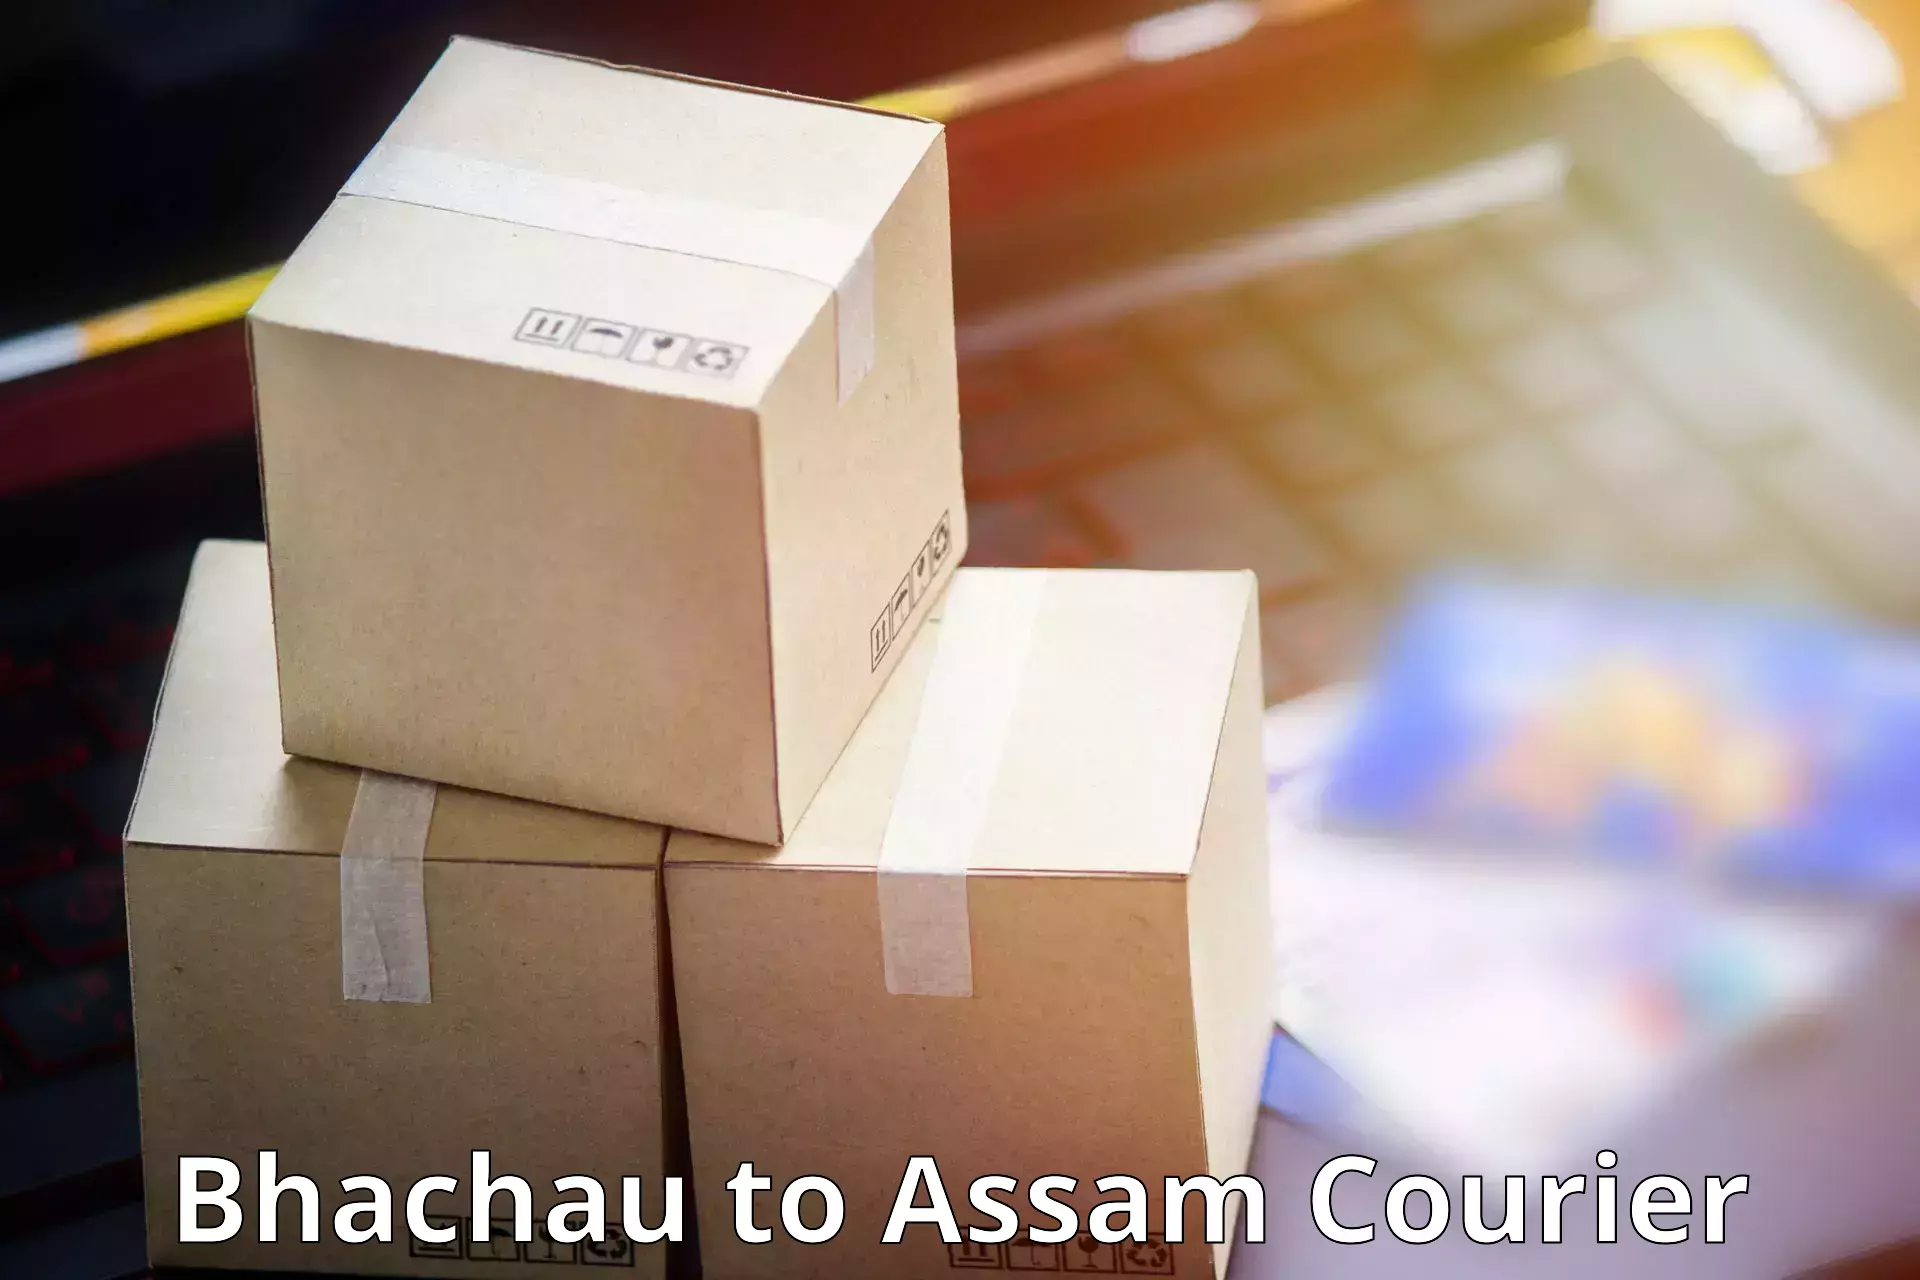 24/7 courier service in Bhachau to Mazbat